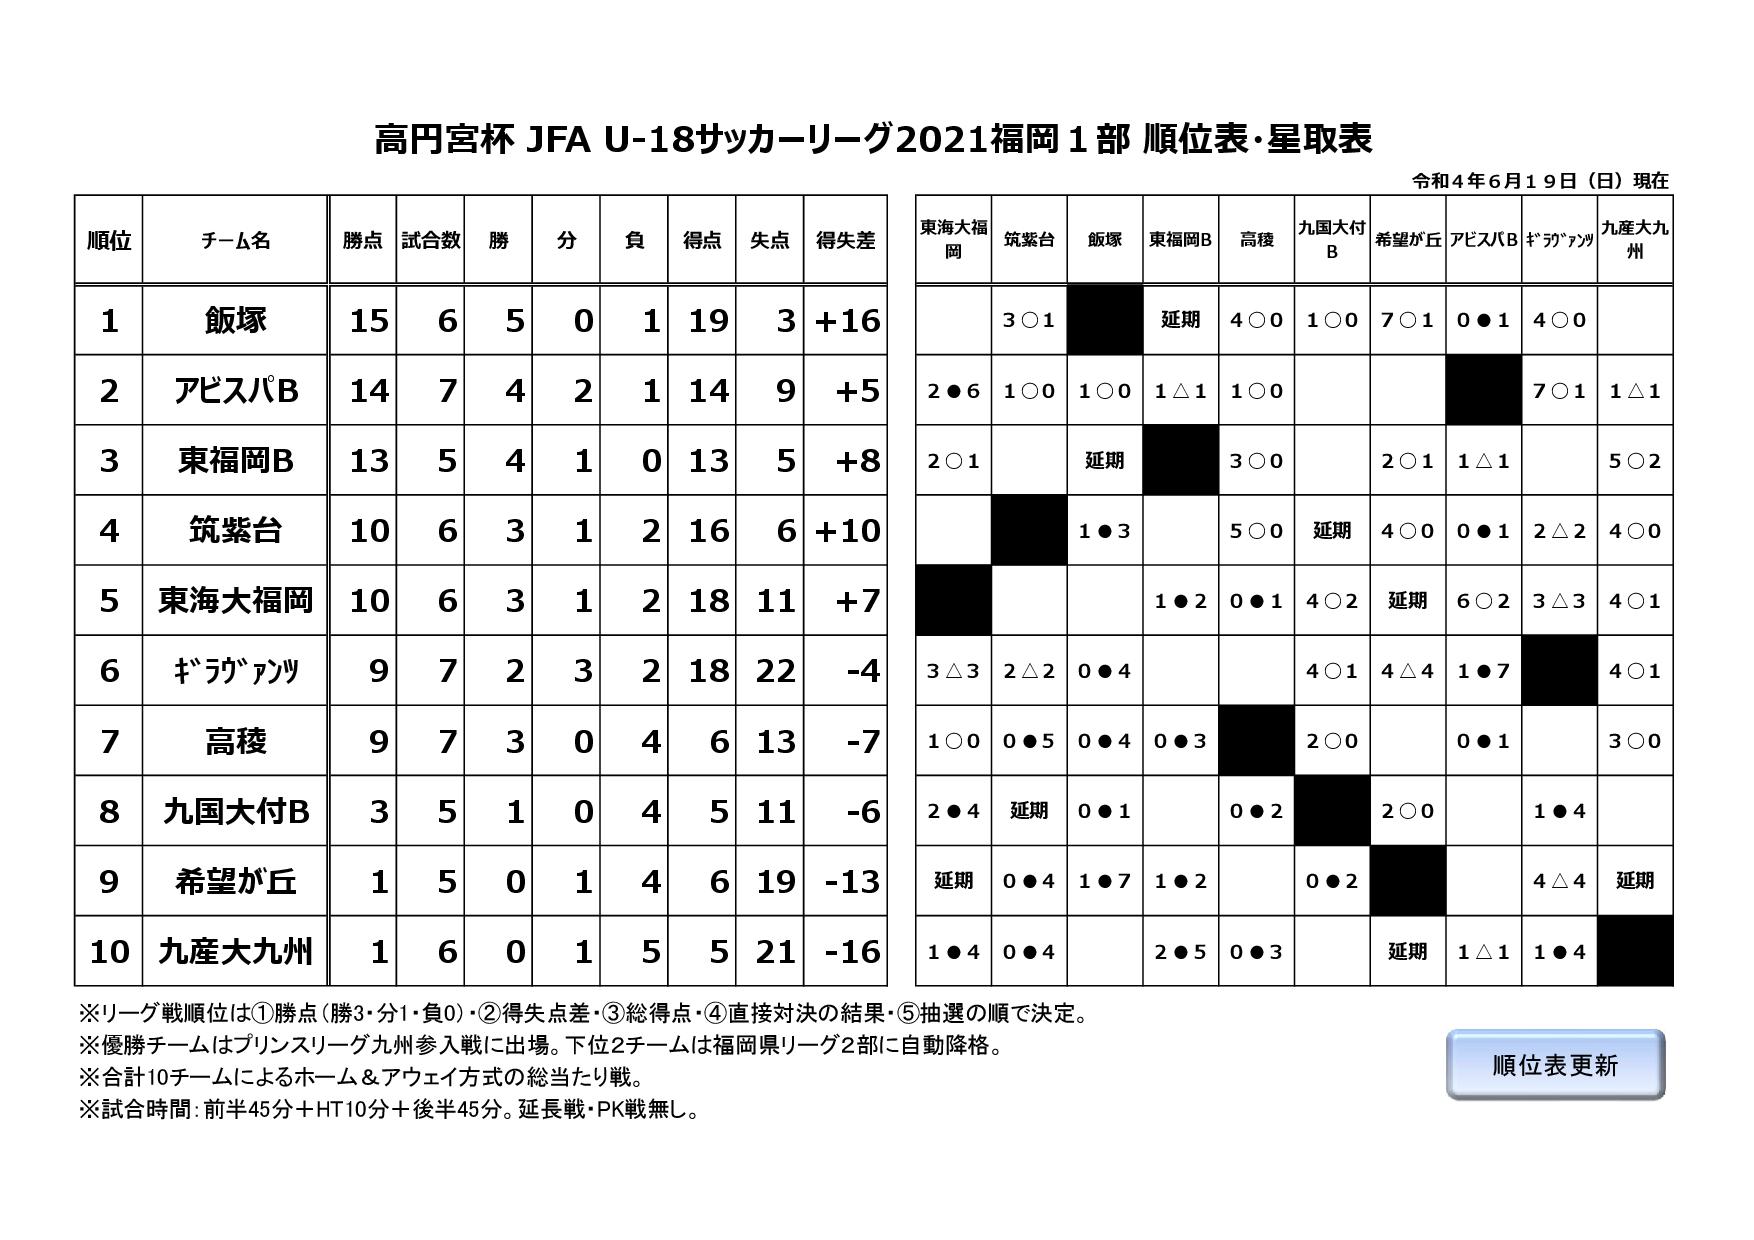 高円宮杯 JFA U-18サッカーリーグ2021福岡１部